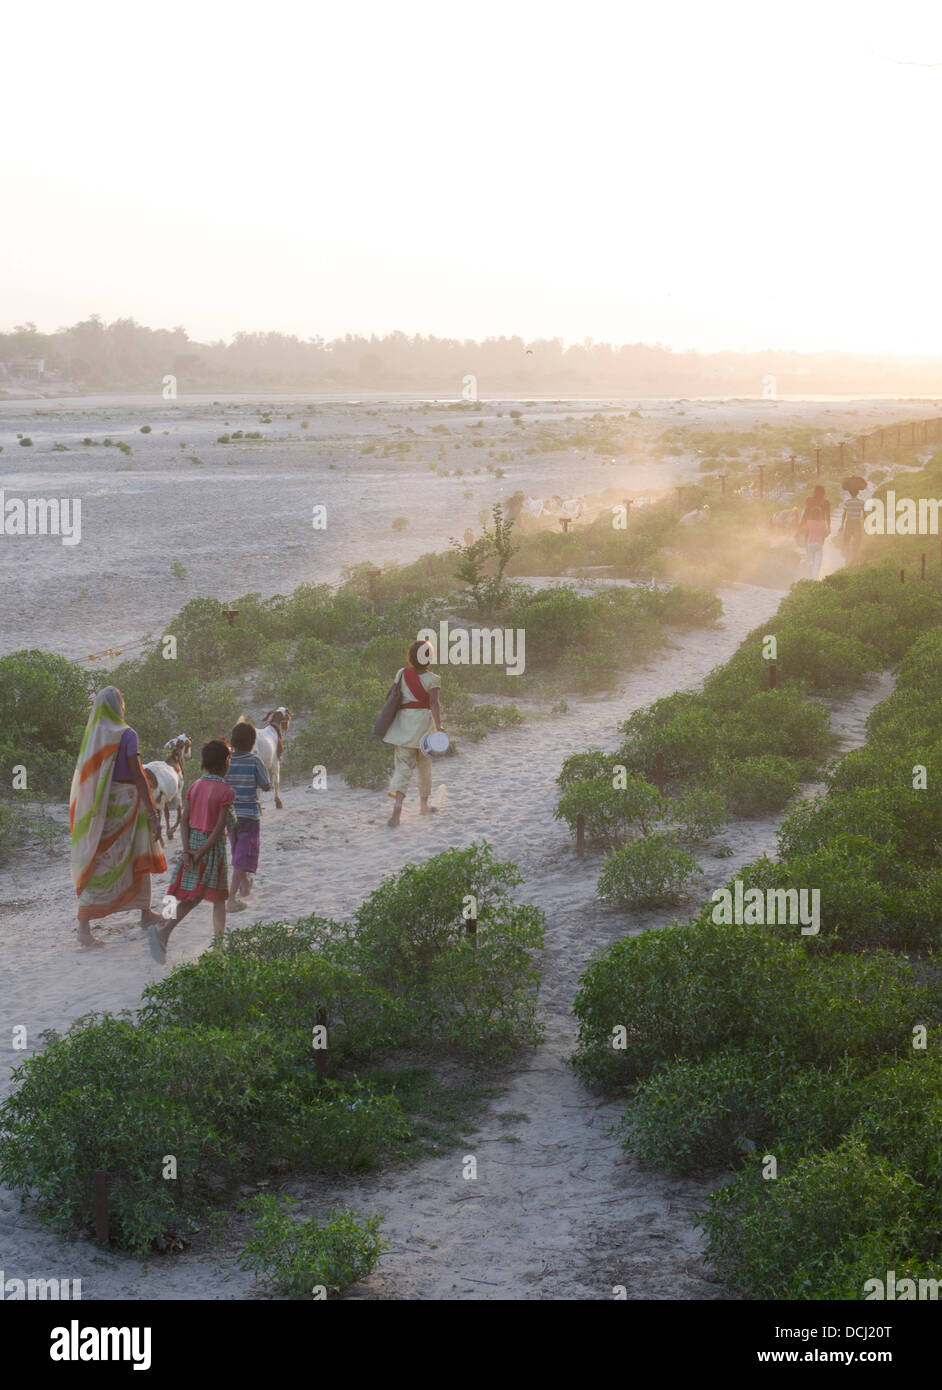 Femme indienne et les enfants à pied le long des rives de la rivière Yamuna au crépuscule / Crépuscule. Agra, Inde Banque D'Images